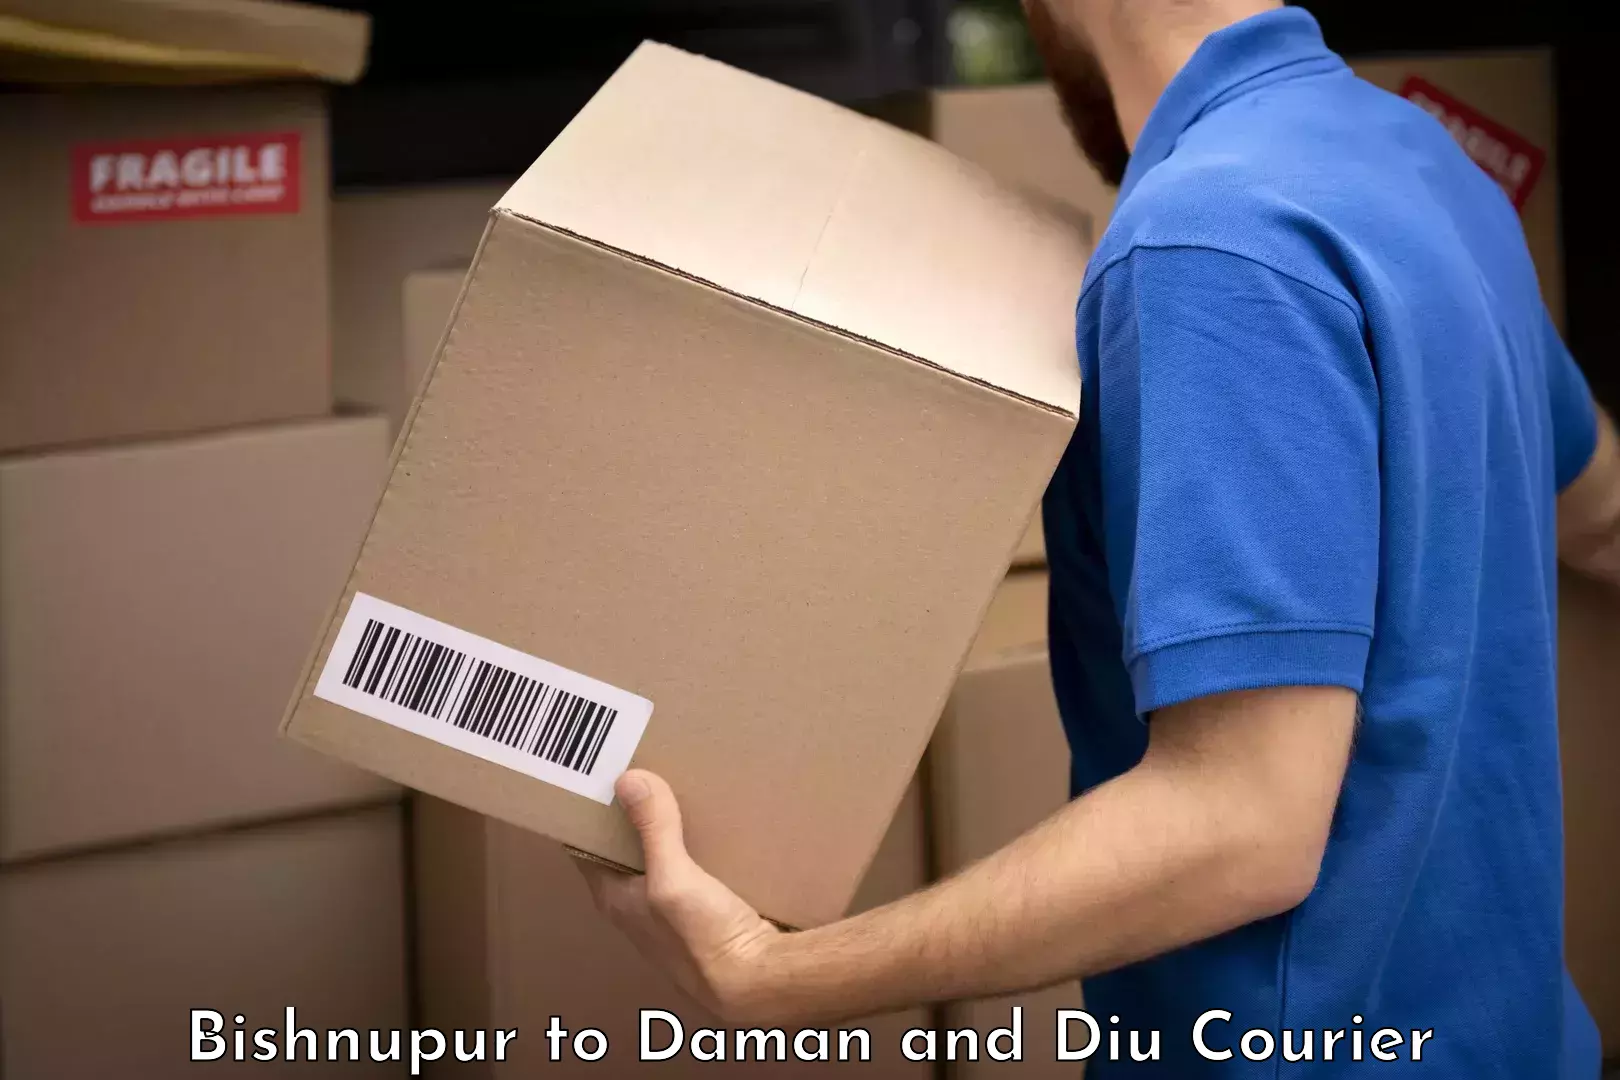 Baggage delivery estimate Bishnupur to Diu